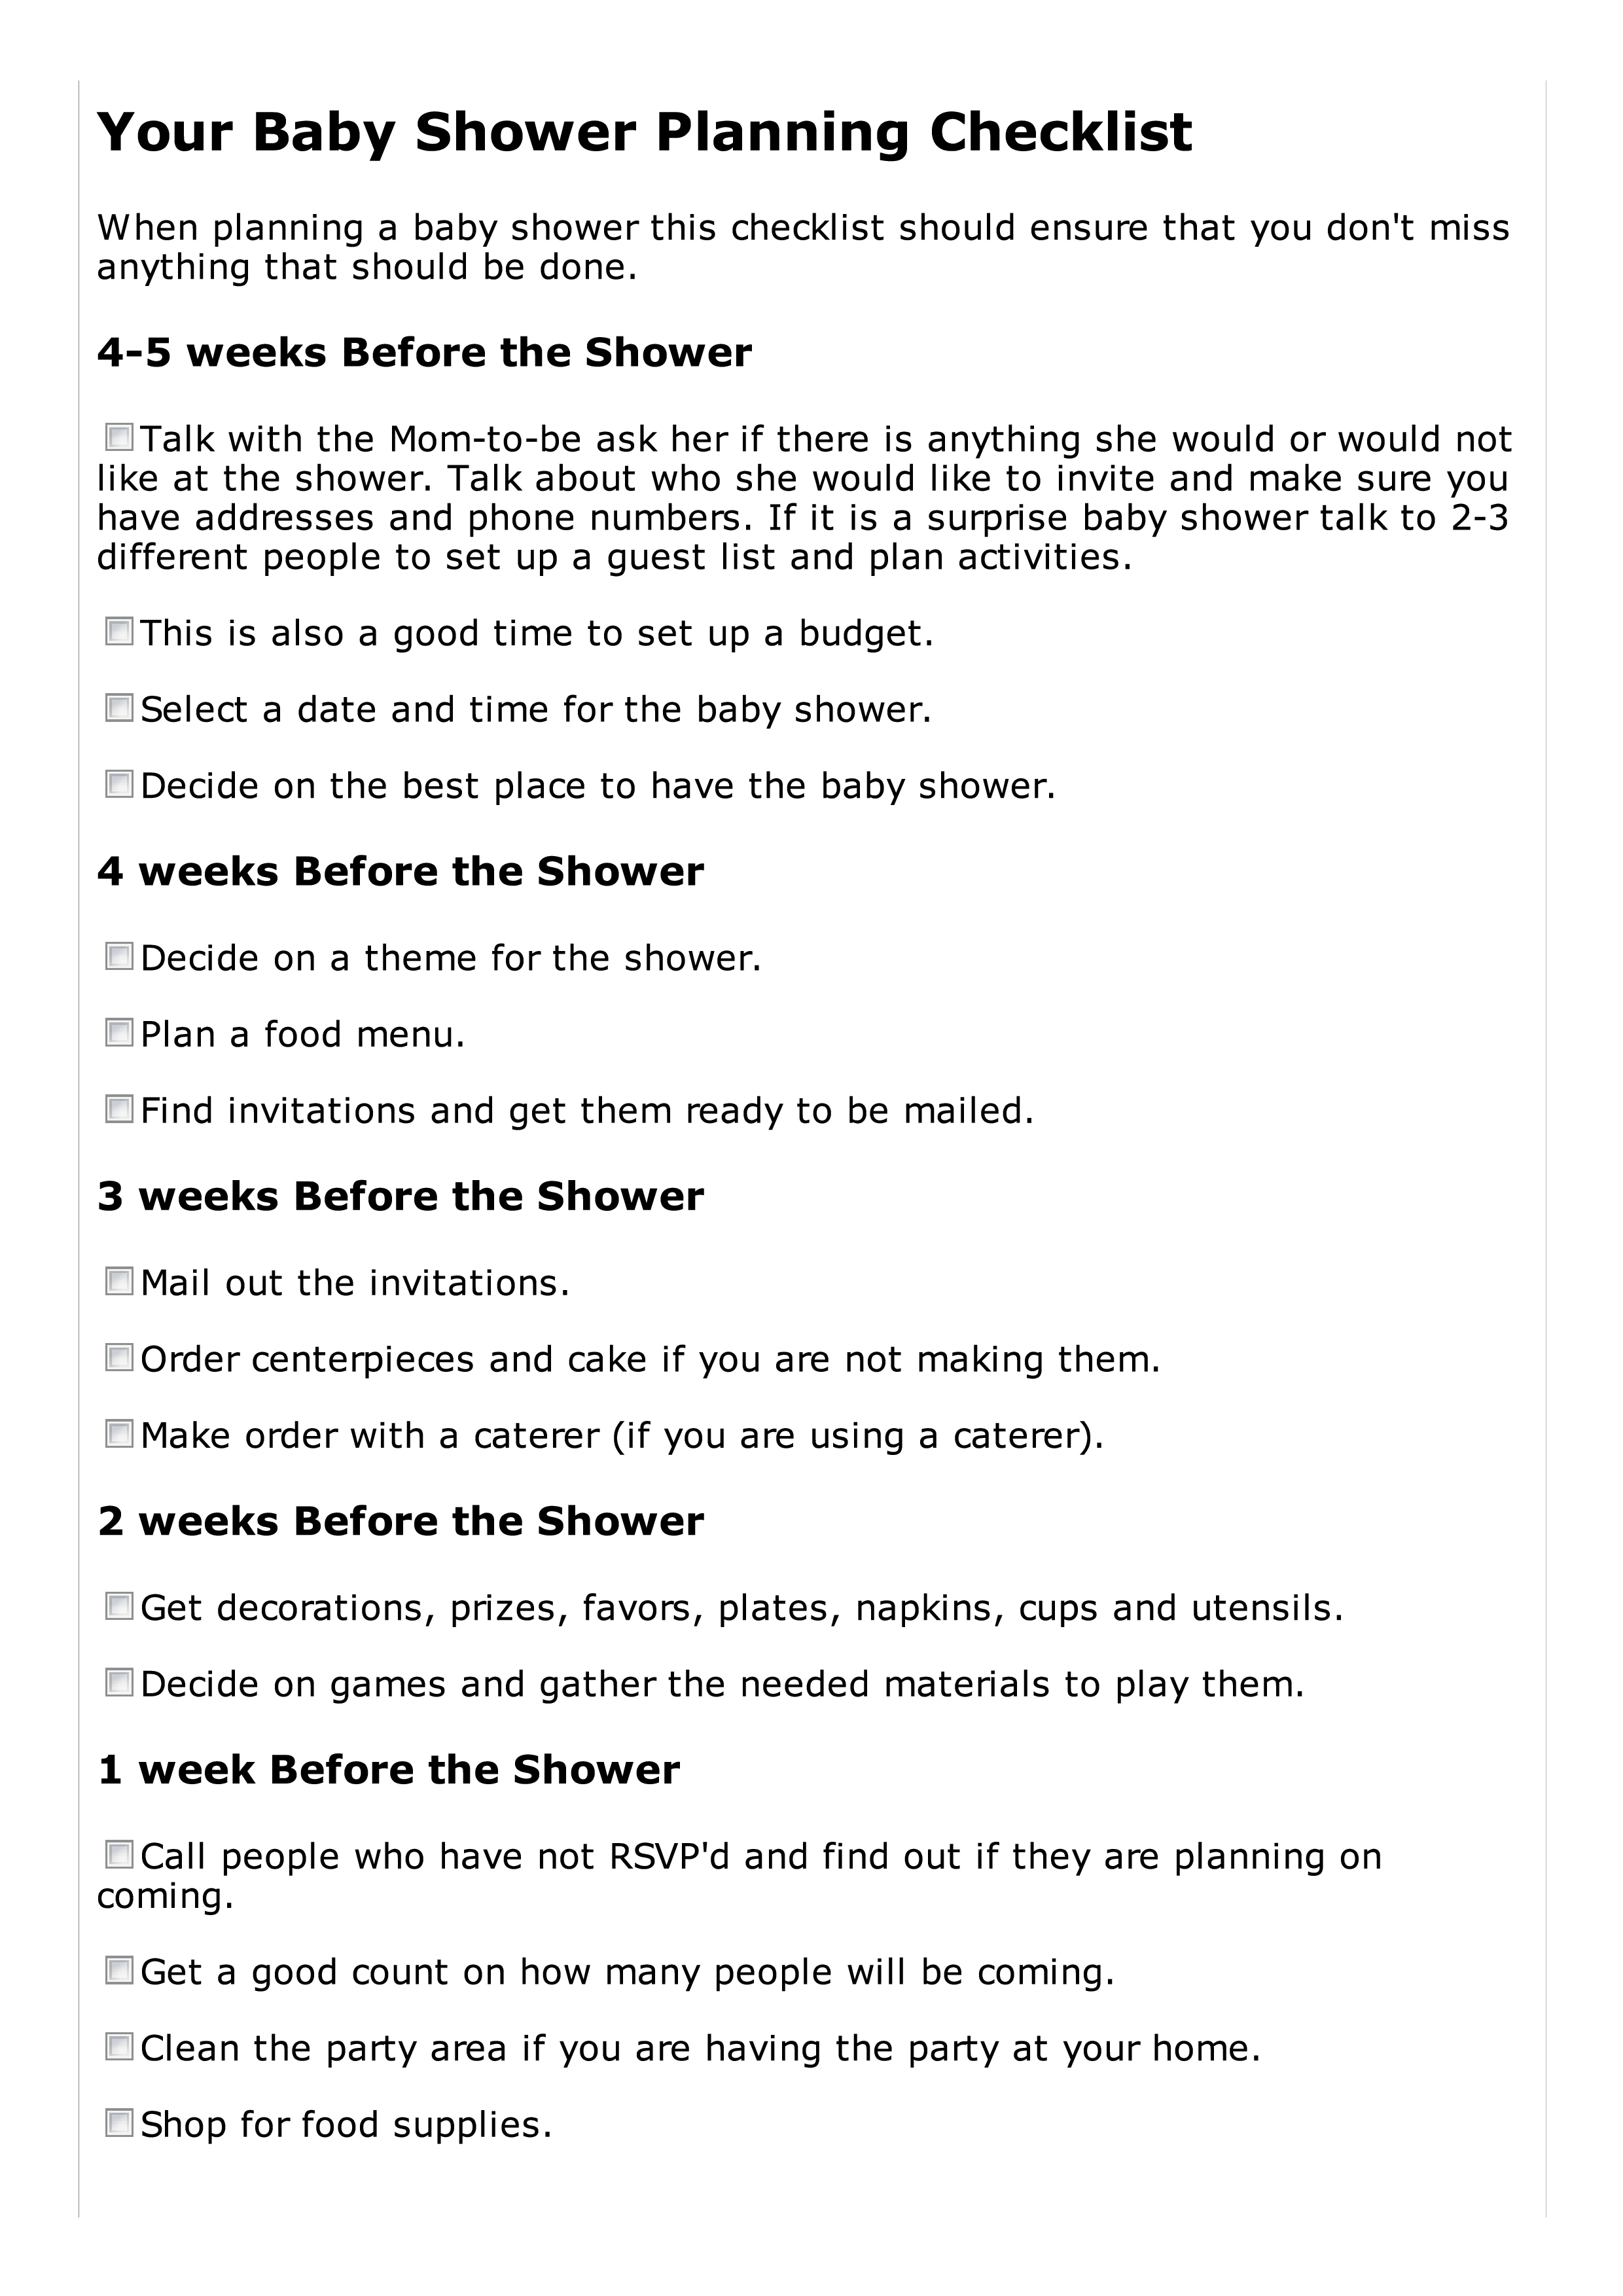 baby shower planning checklist plantilla imagen principal